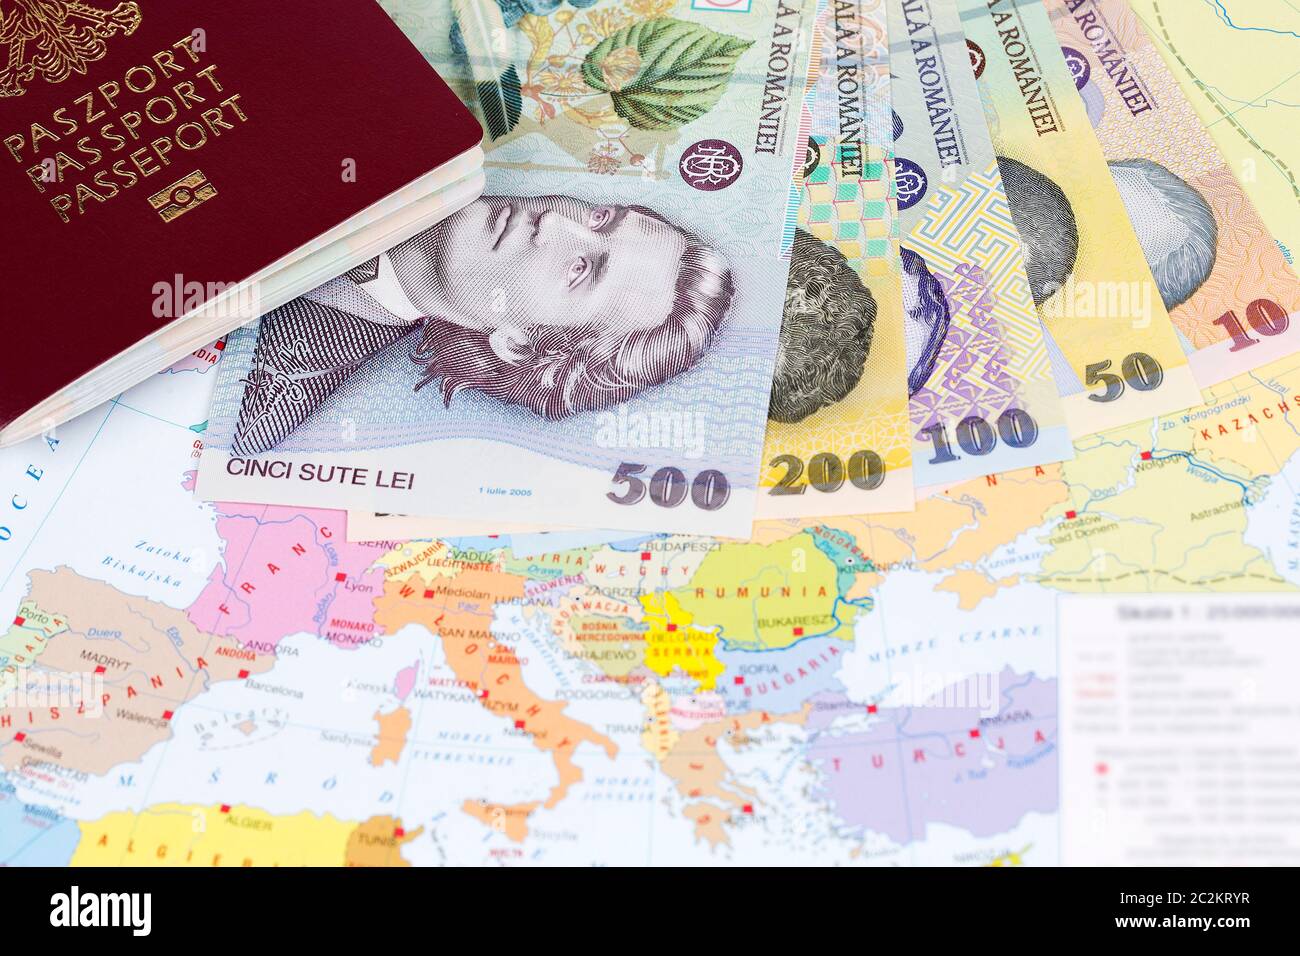 Passaporto con denaro rumeno sullo sfondo della mappa Foto Stock